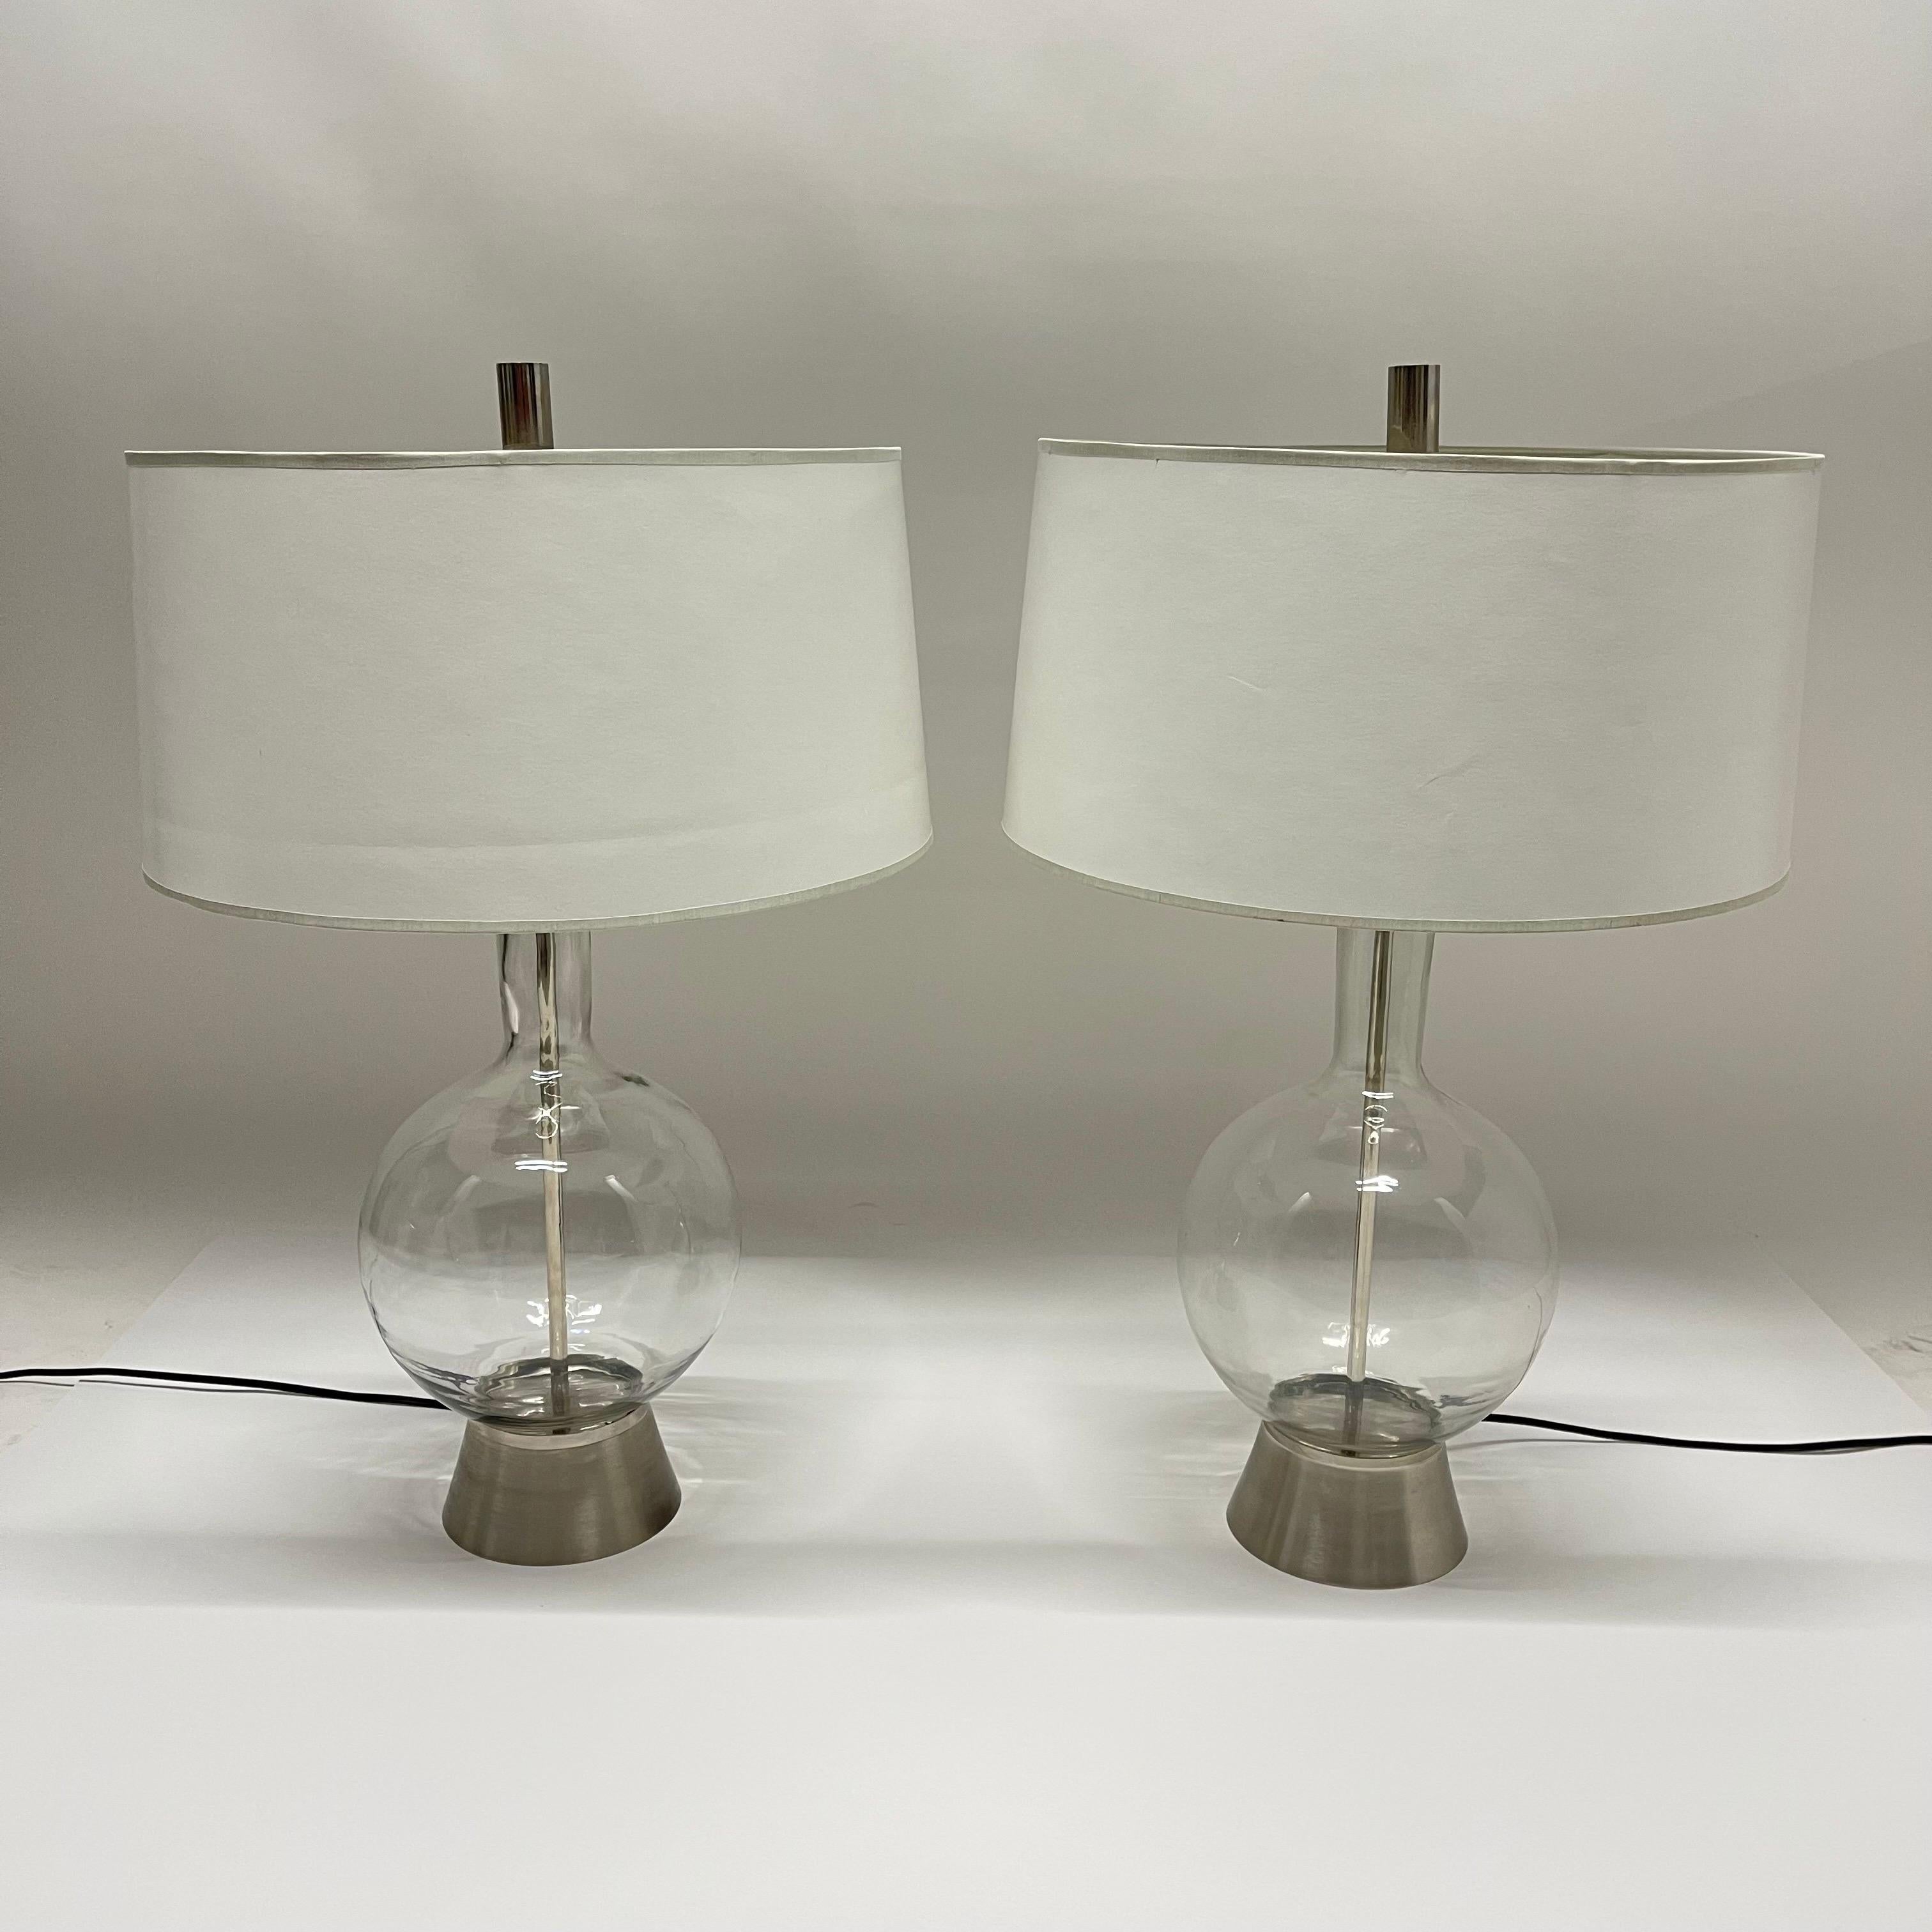 Zwei exquisite Tischlampen aus mundgeblasenem Klarglas aus der Mitte des Jahrhunderts mit Sockeln aus gebürstetem Nickel und Fassungen aus Nickel, Harfen und Endstücken.

Abmessungen:
10